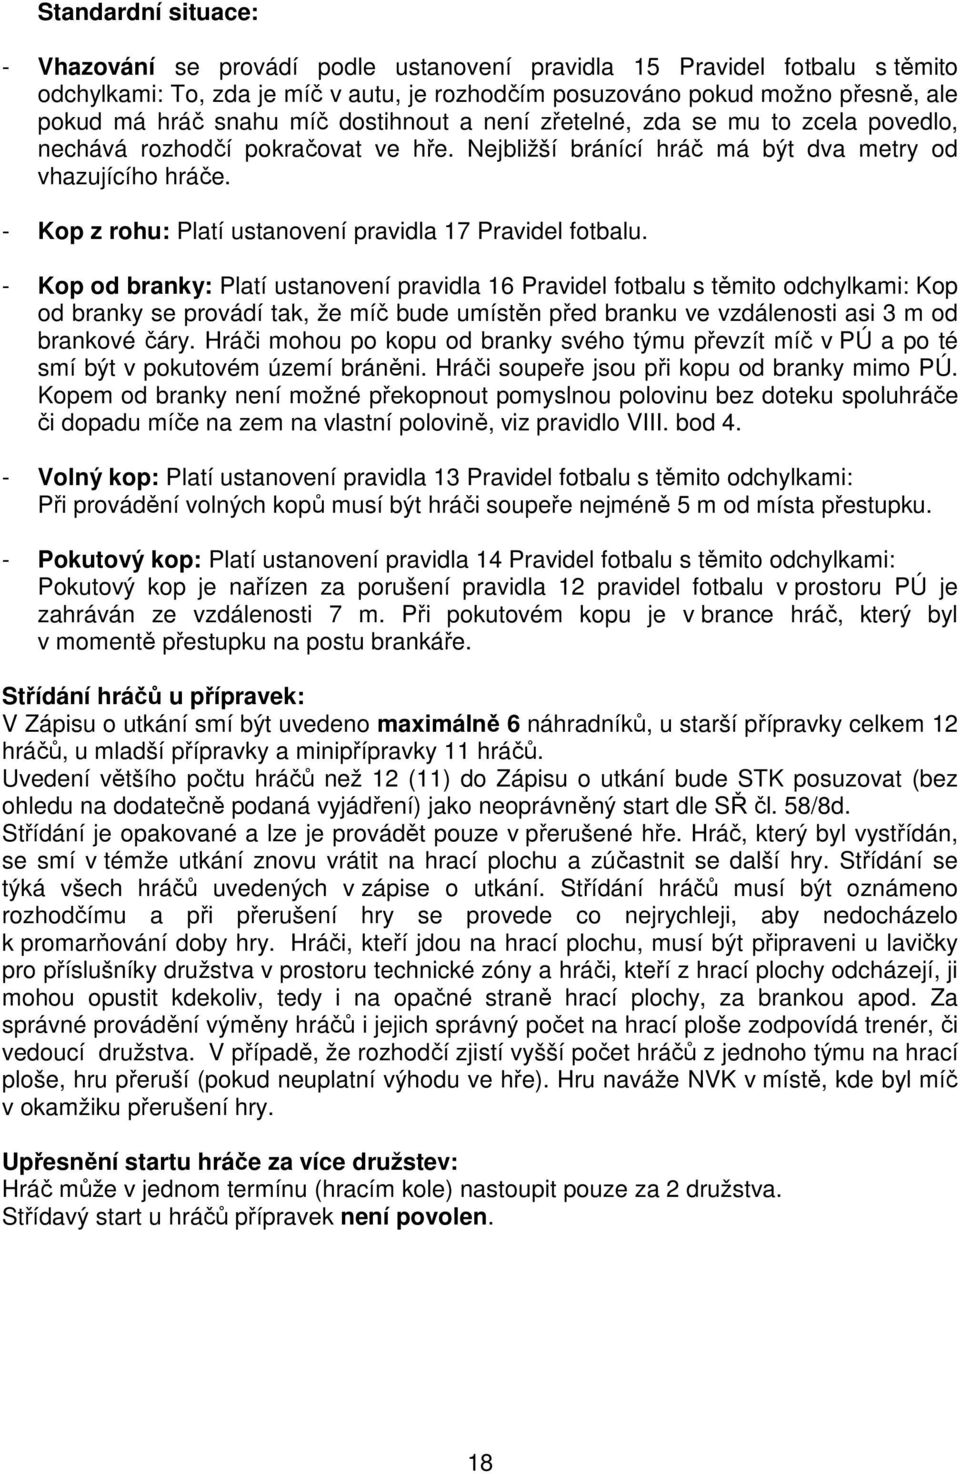 - Kop z rohu: Platí ustanovení pravidla 17 Pravidel fotbalu.